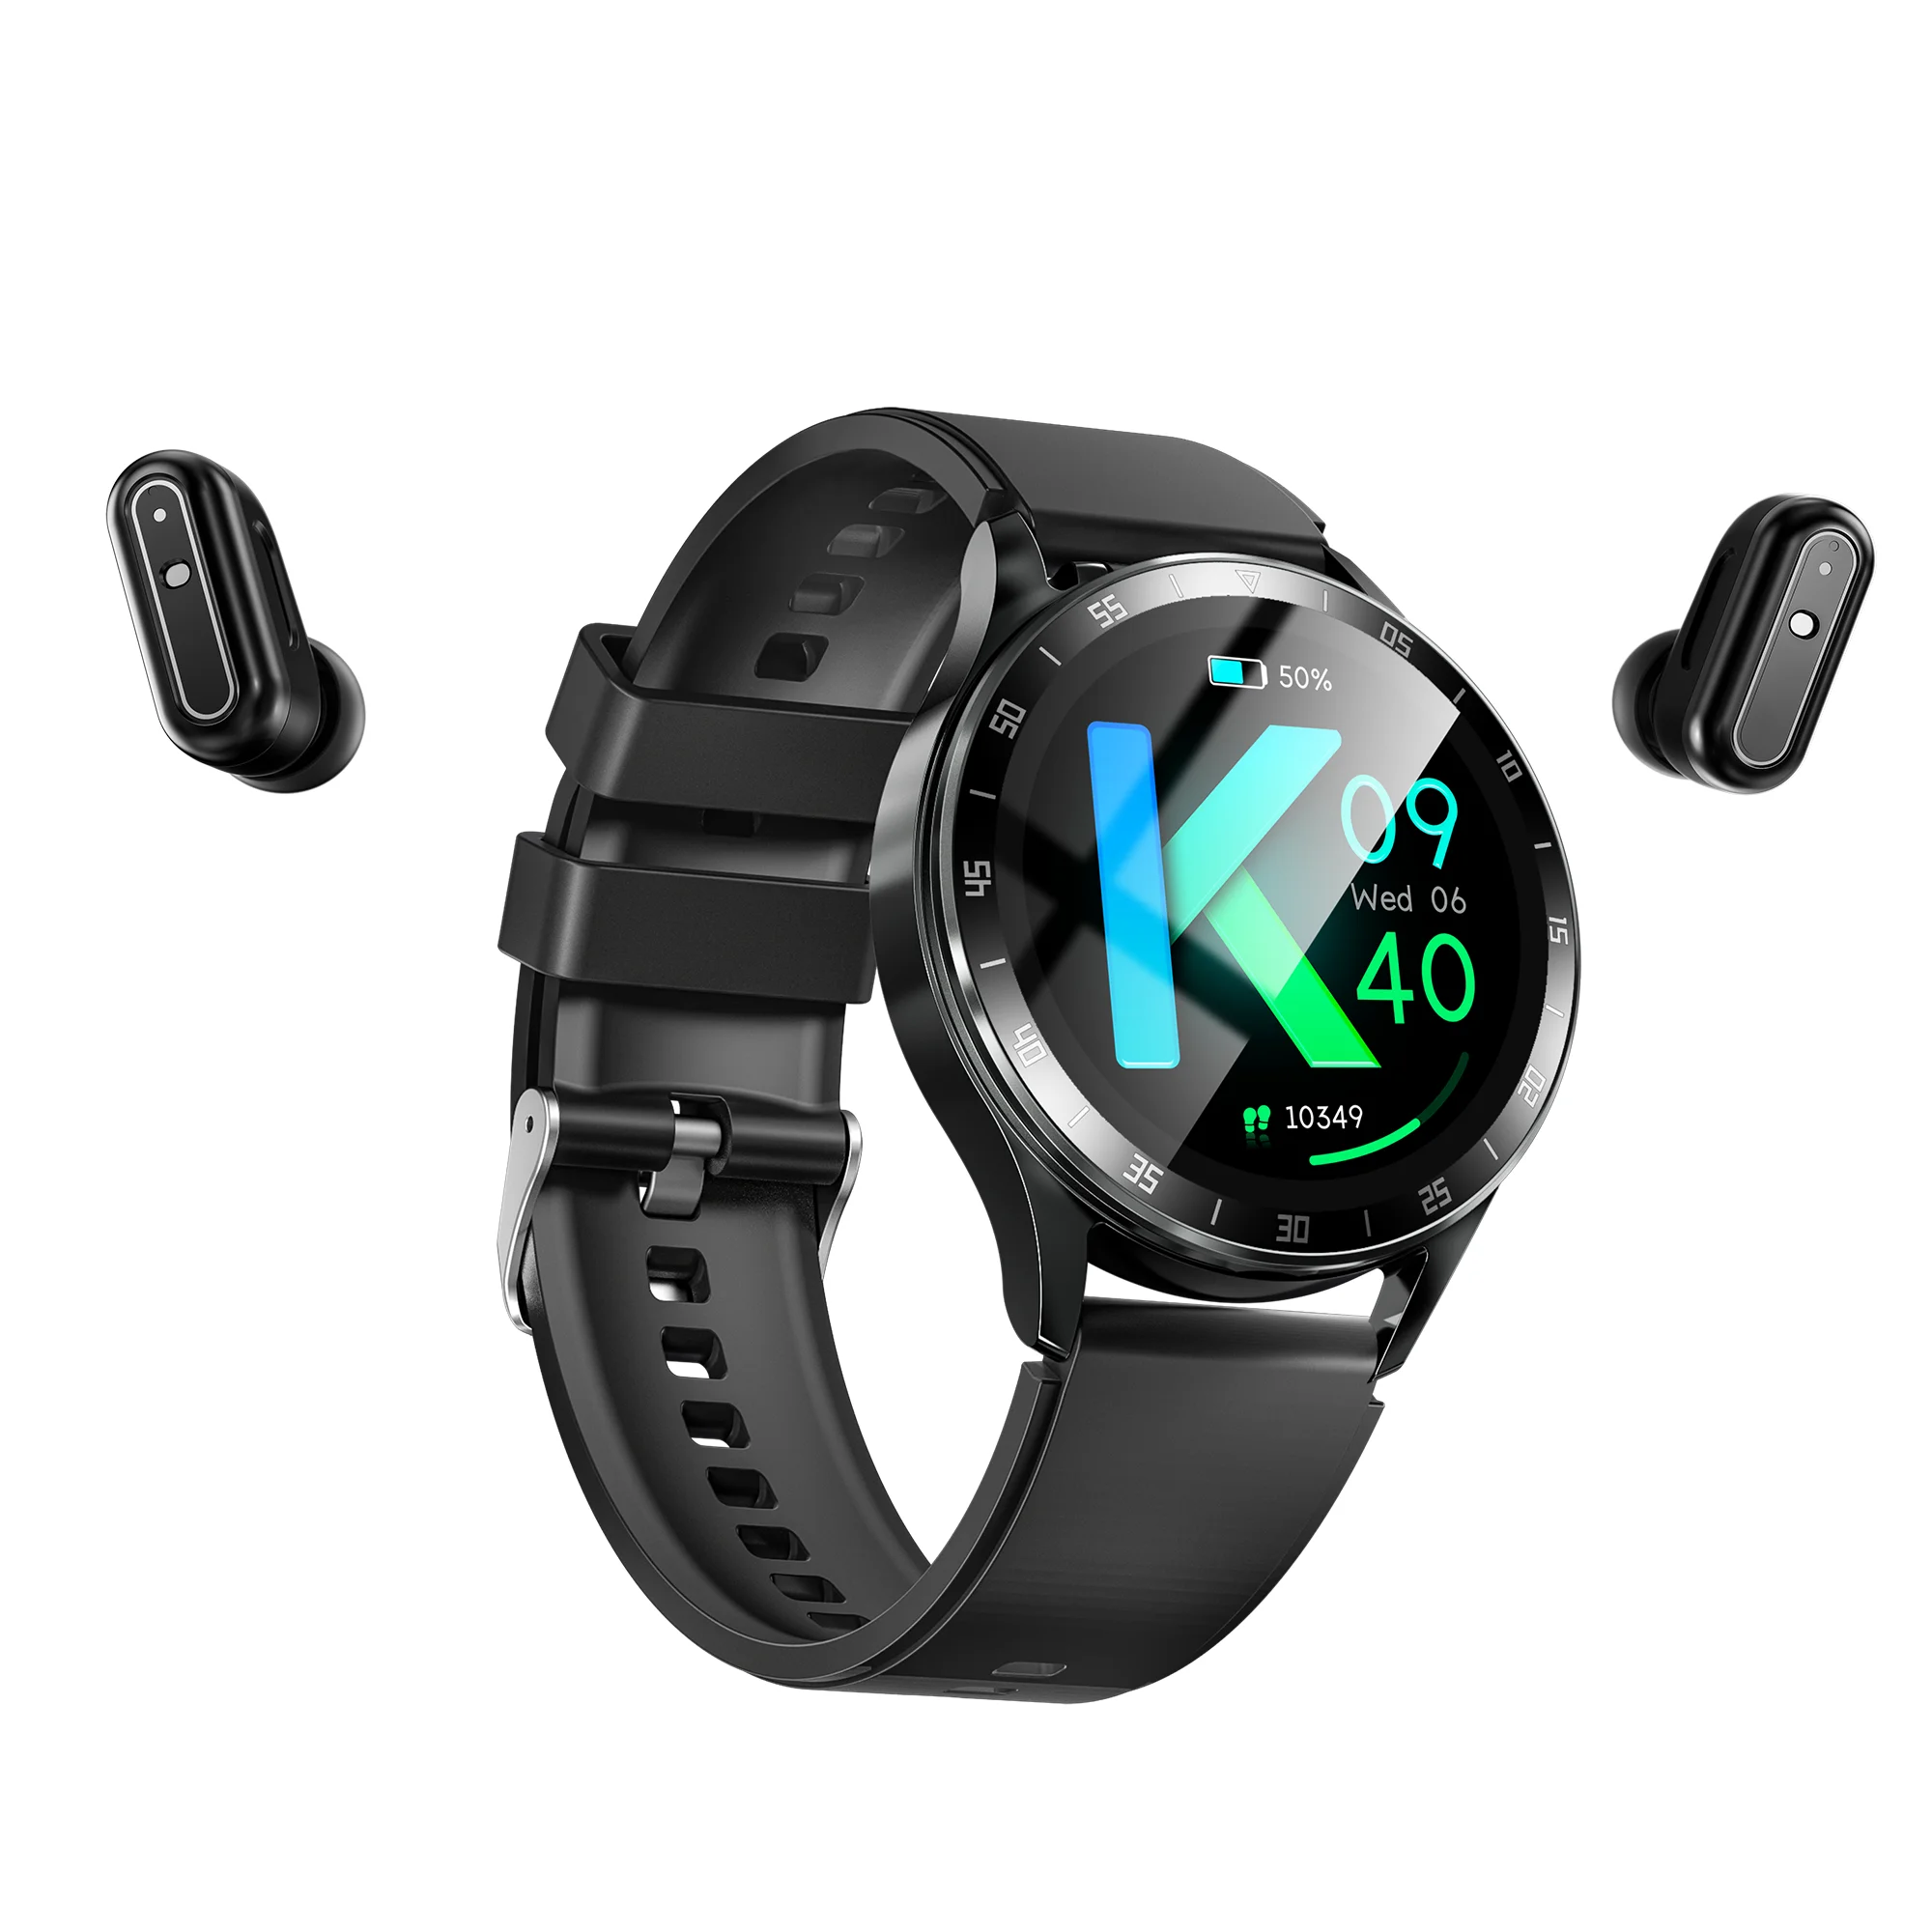 

X10 умные часы TWS гарнитура два в одном Беспроводная Bluetooth двойная гарнитура звонки спорт музыка фитнес-трекер умные часы наушники